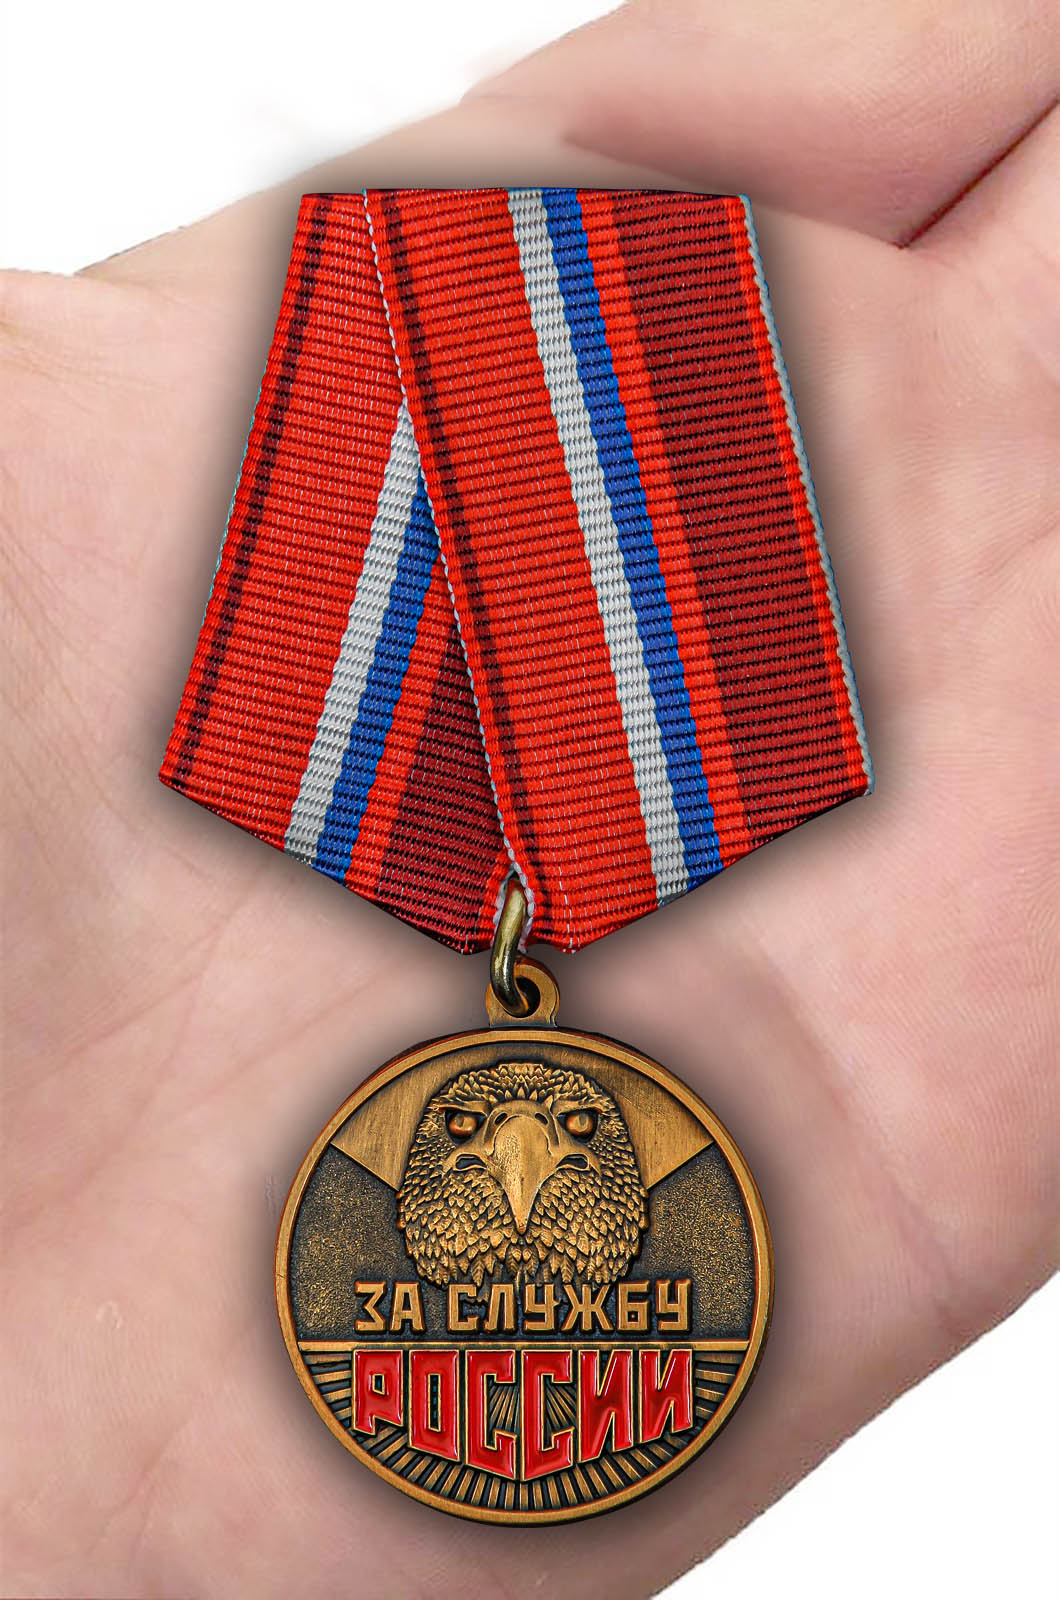 Эксклюзивная медаль "За службу России" авторской разработки